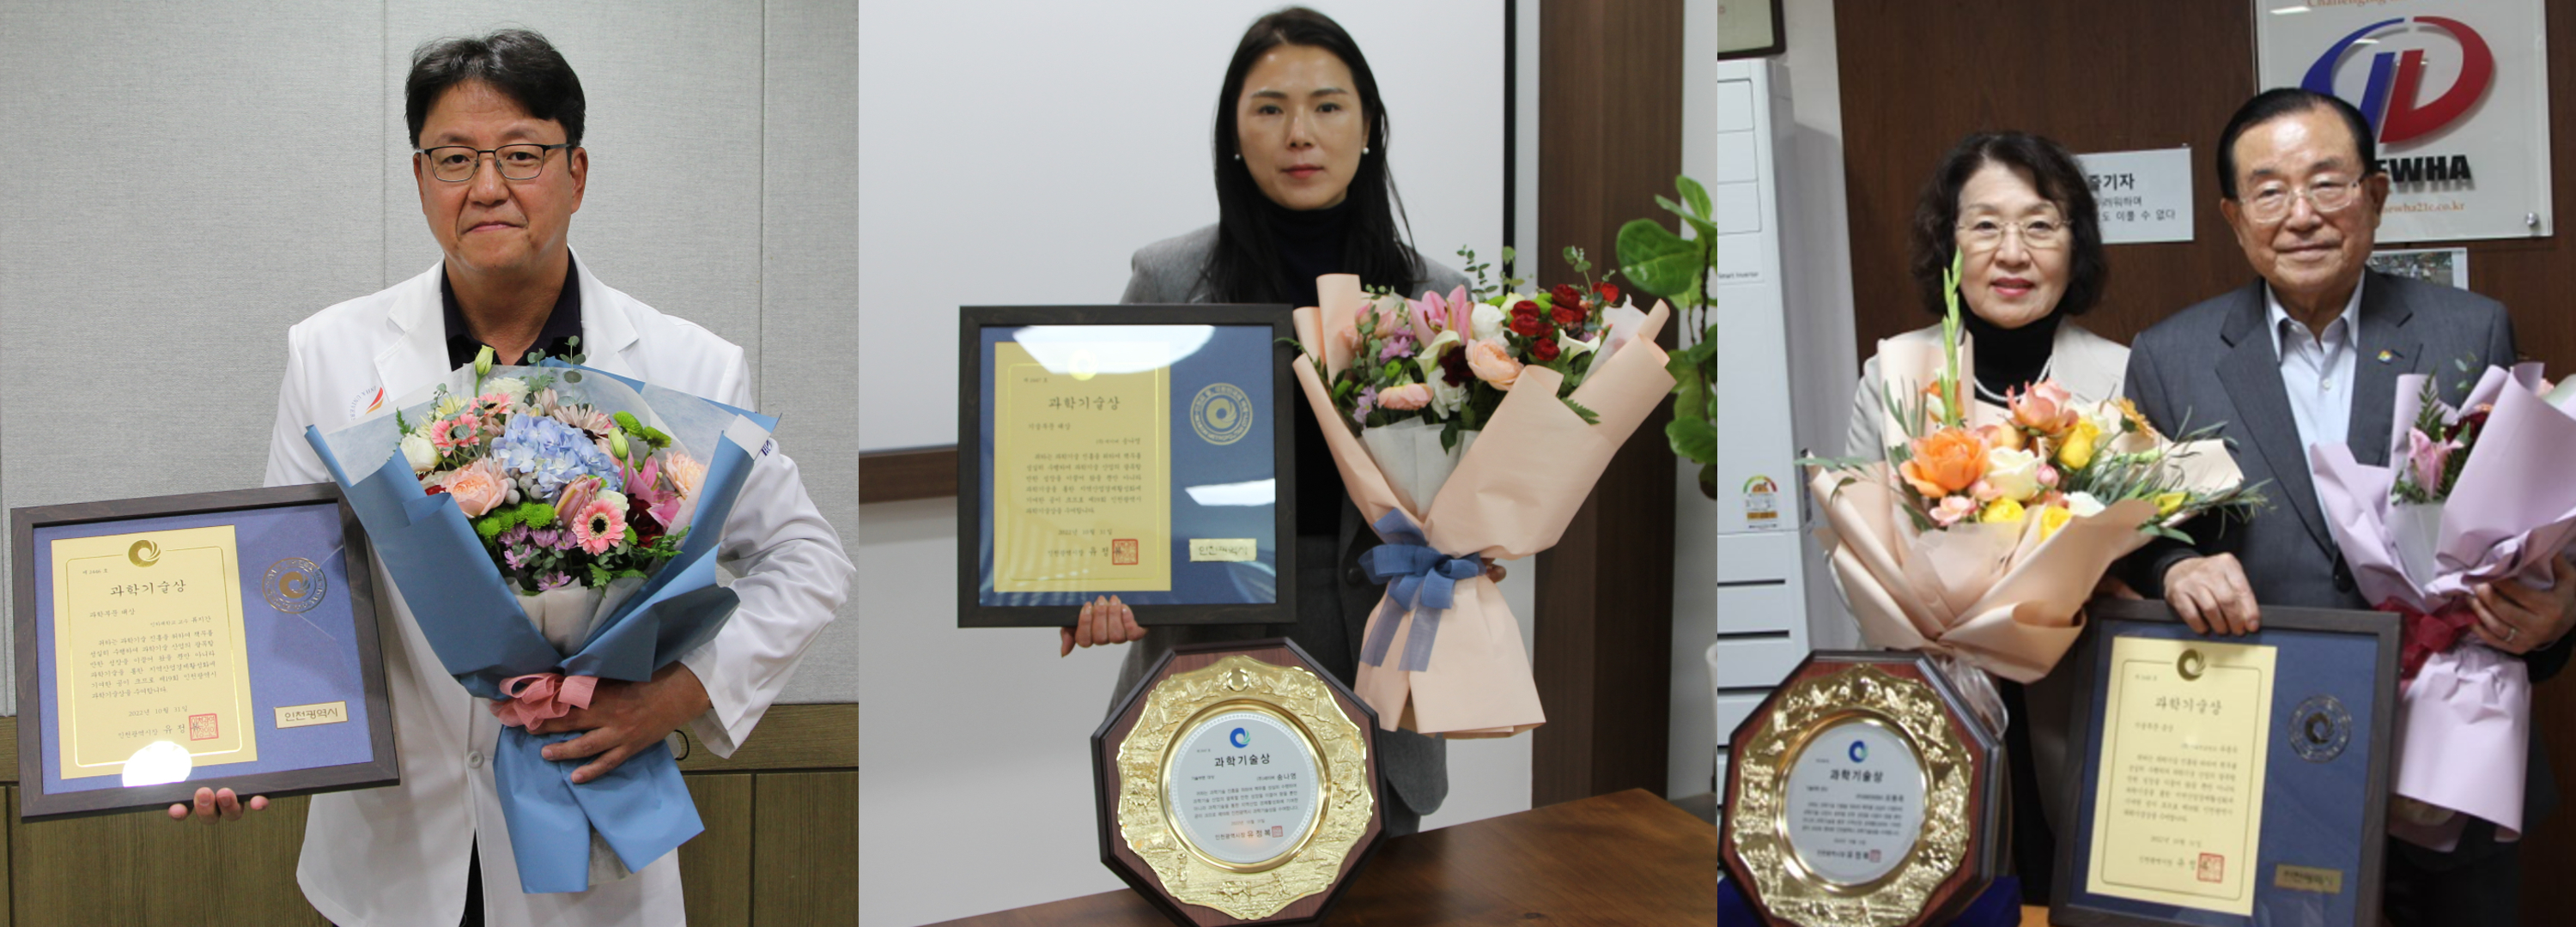 과학기술상 수상자. 왼쪽부터 류지간, 송나영, 유동옥(사진 오른쪽).jpg